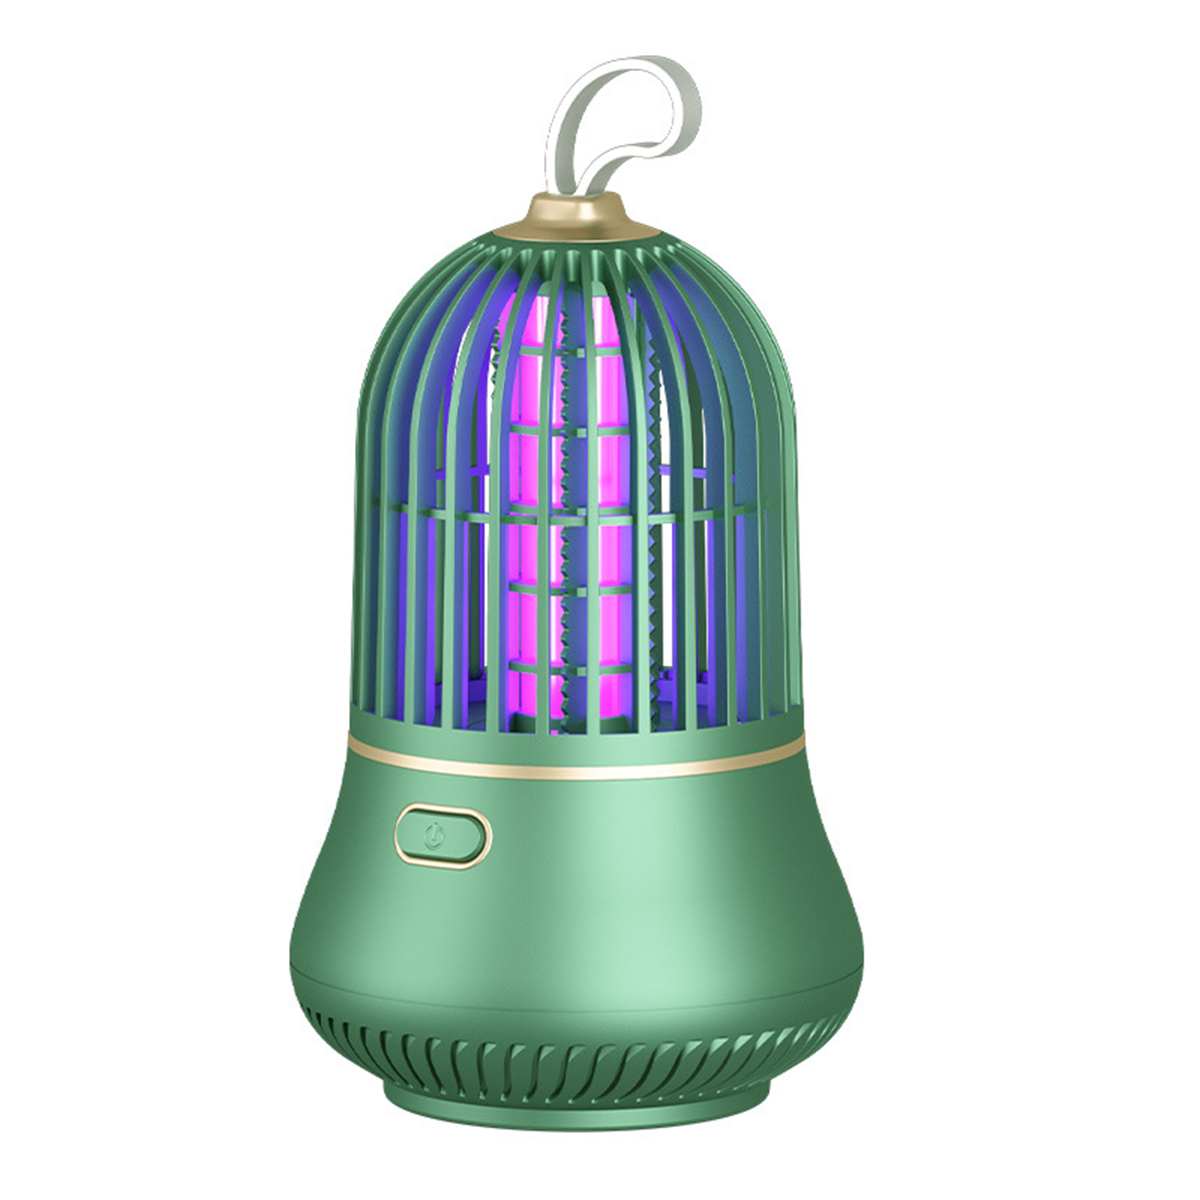 USB-LED Moskito Insektenvernichter Killer effektive BRIGHTAKE Schädlingsbekämpfung und für Lampe leise